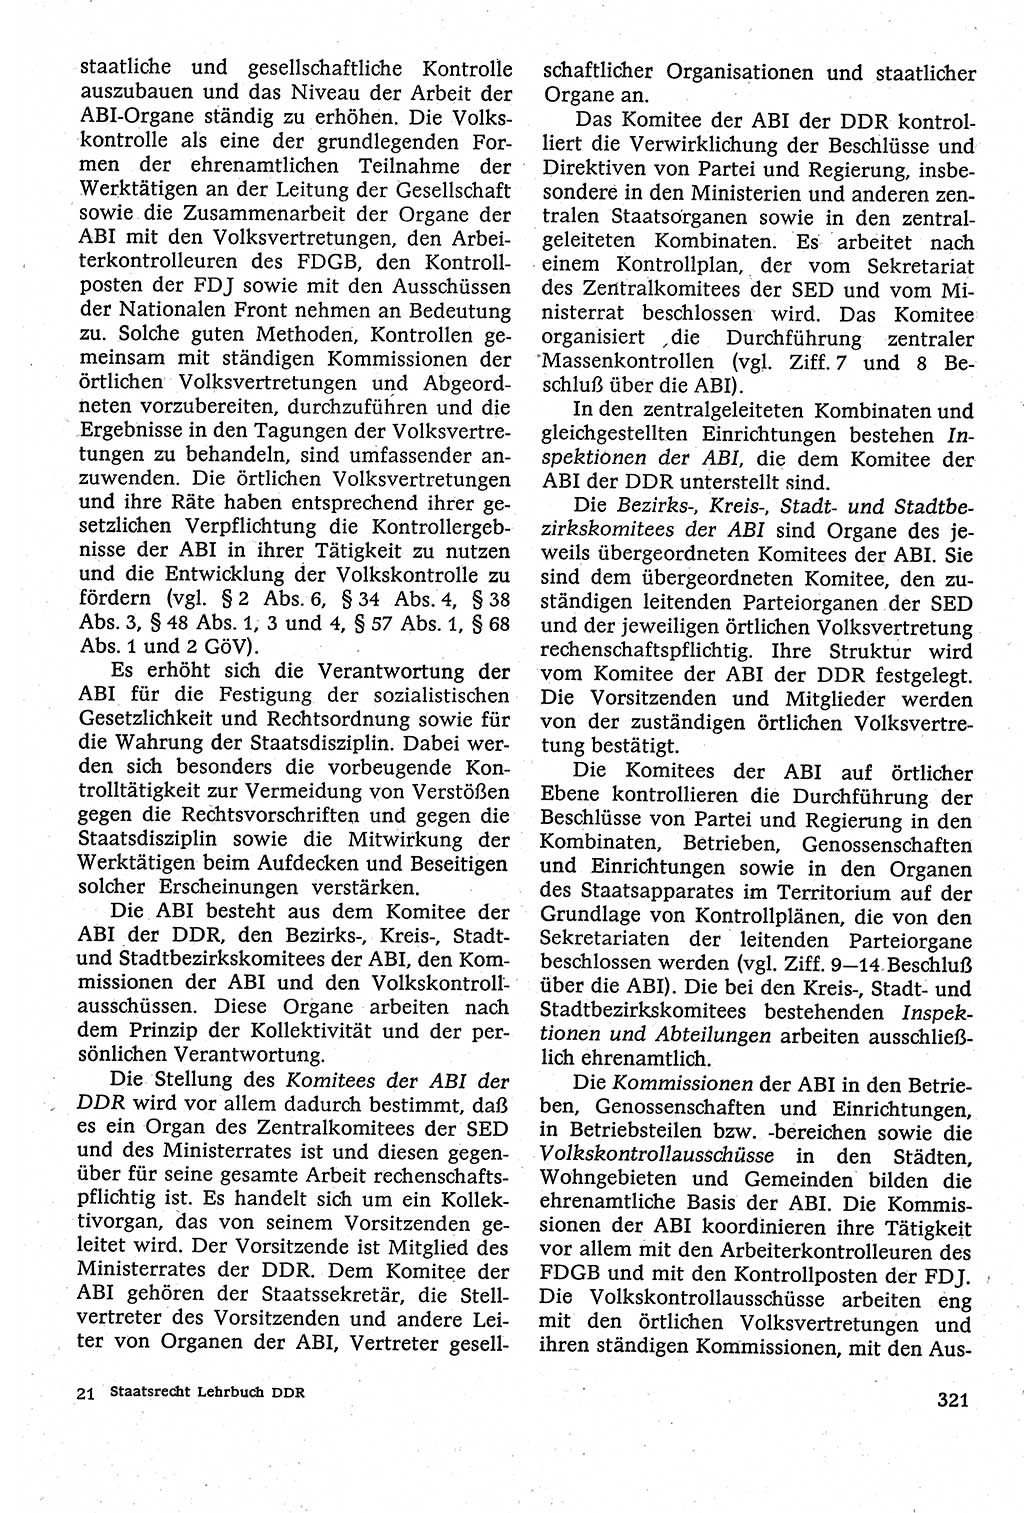 Staatsrecht der DDR [Deutsche Demokratische Republik (DDR)], Lehrbuch 1984, Seite 321 (St.-R. DDR Lb. 1984, S. 321)